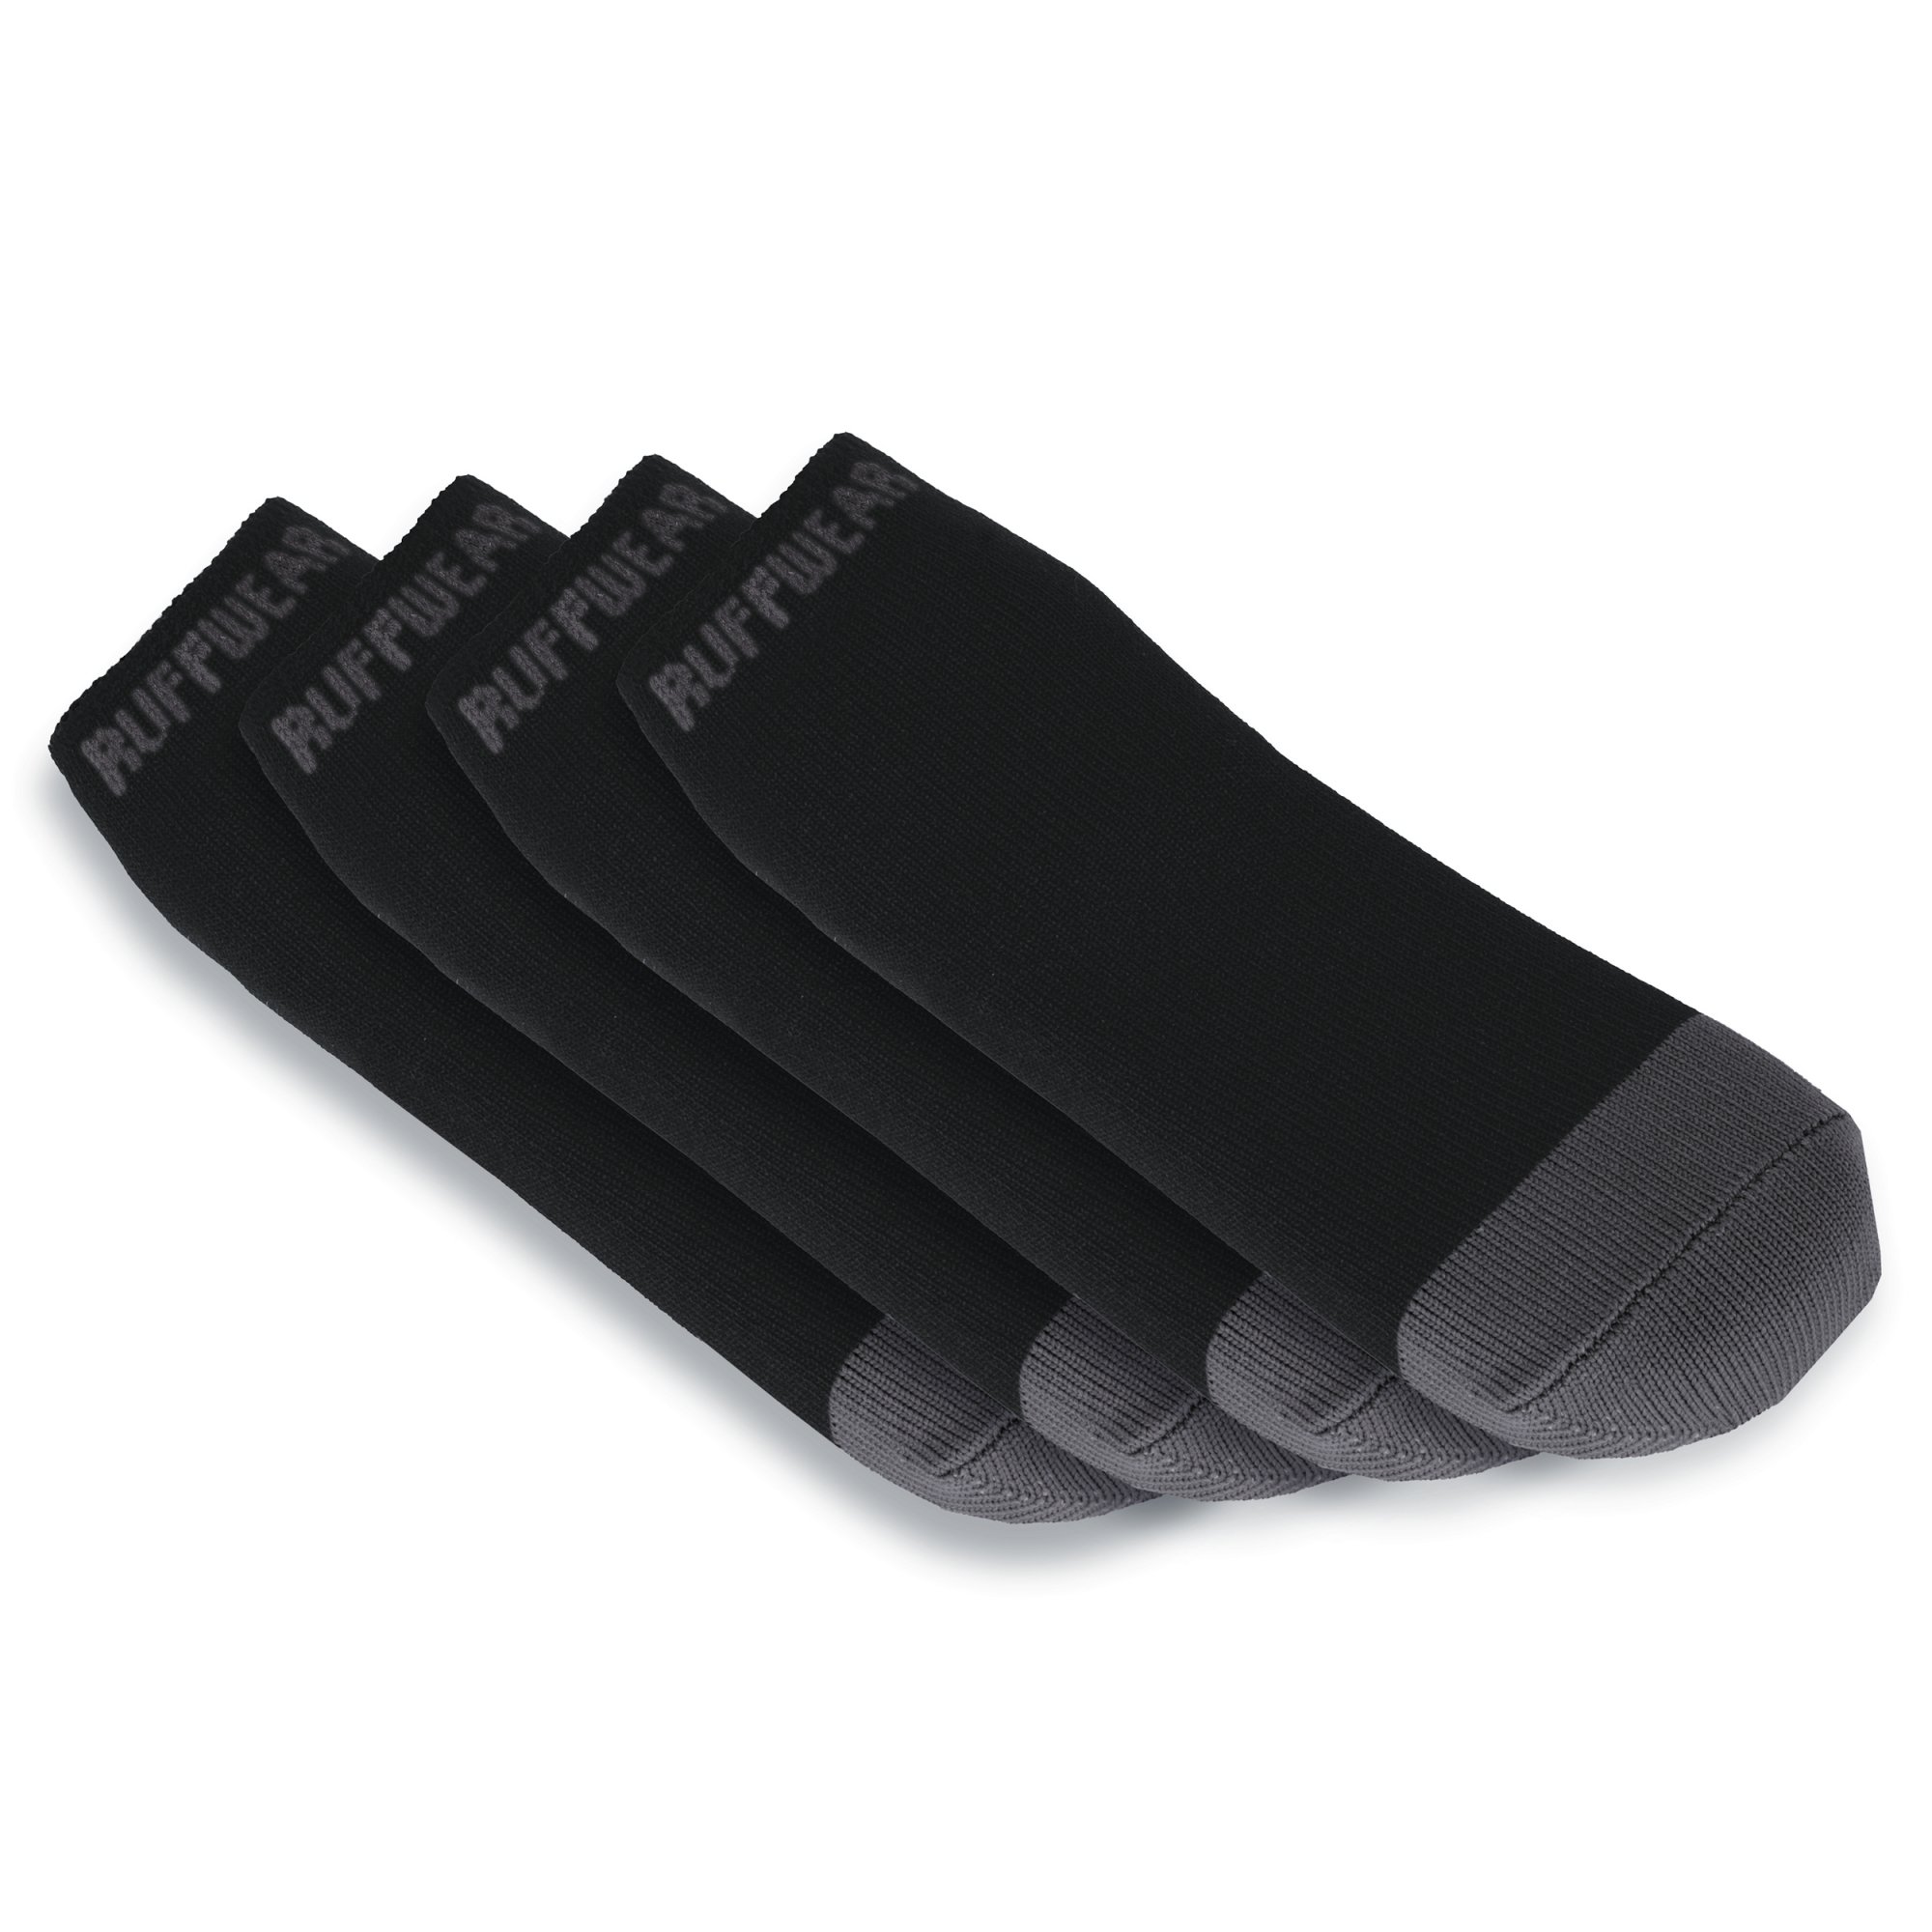 Ruffwear Bark'n Boot Liners Socken – mehrere Größen erhältlich